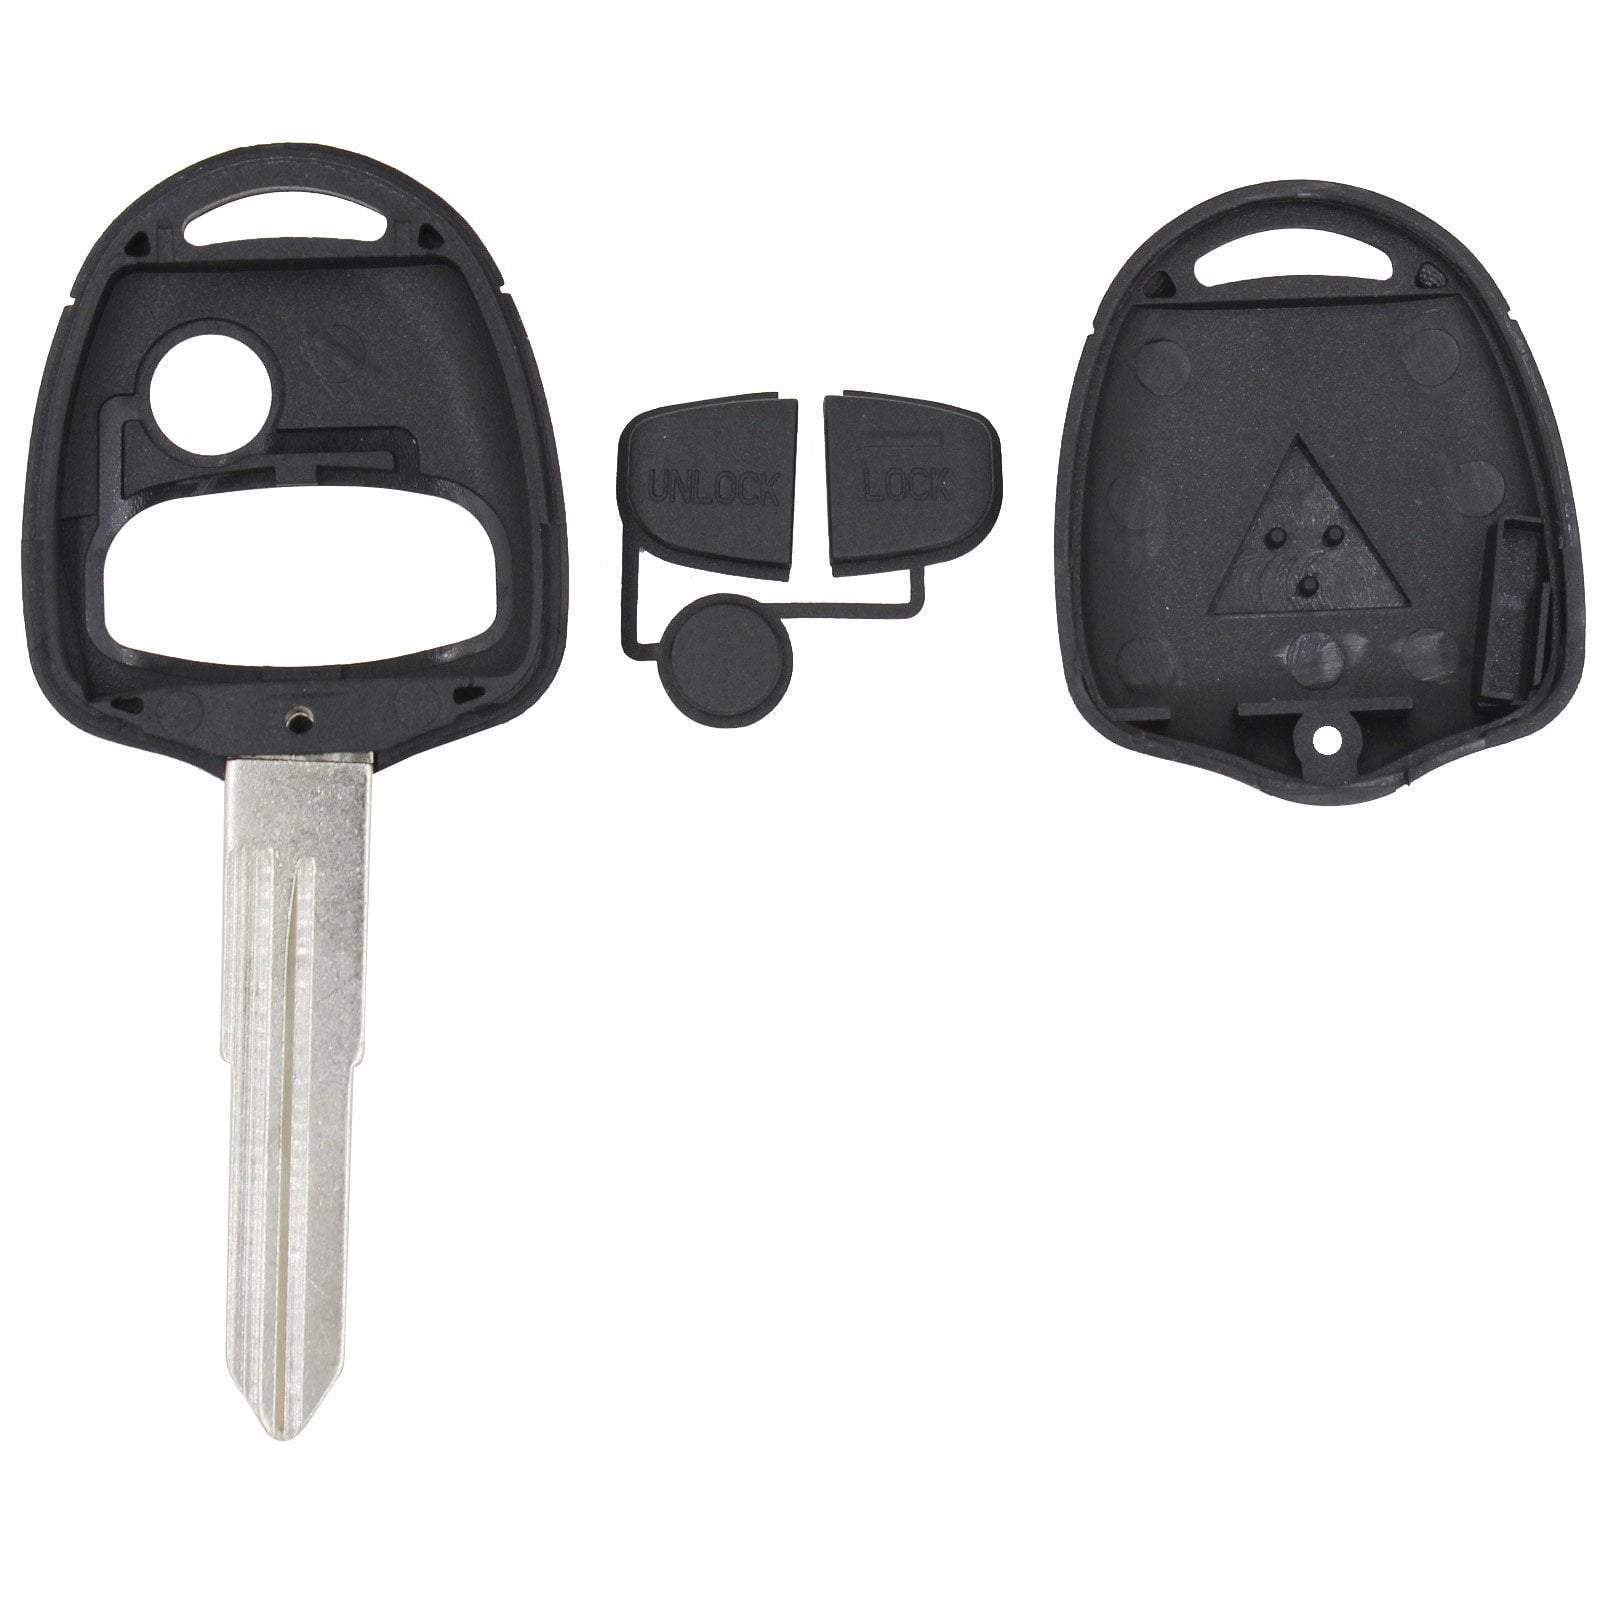 Fekete színű, 3 gombos Mitsubishi kulcs, kulcsház szétszedve